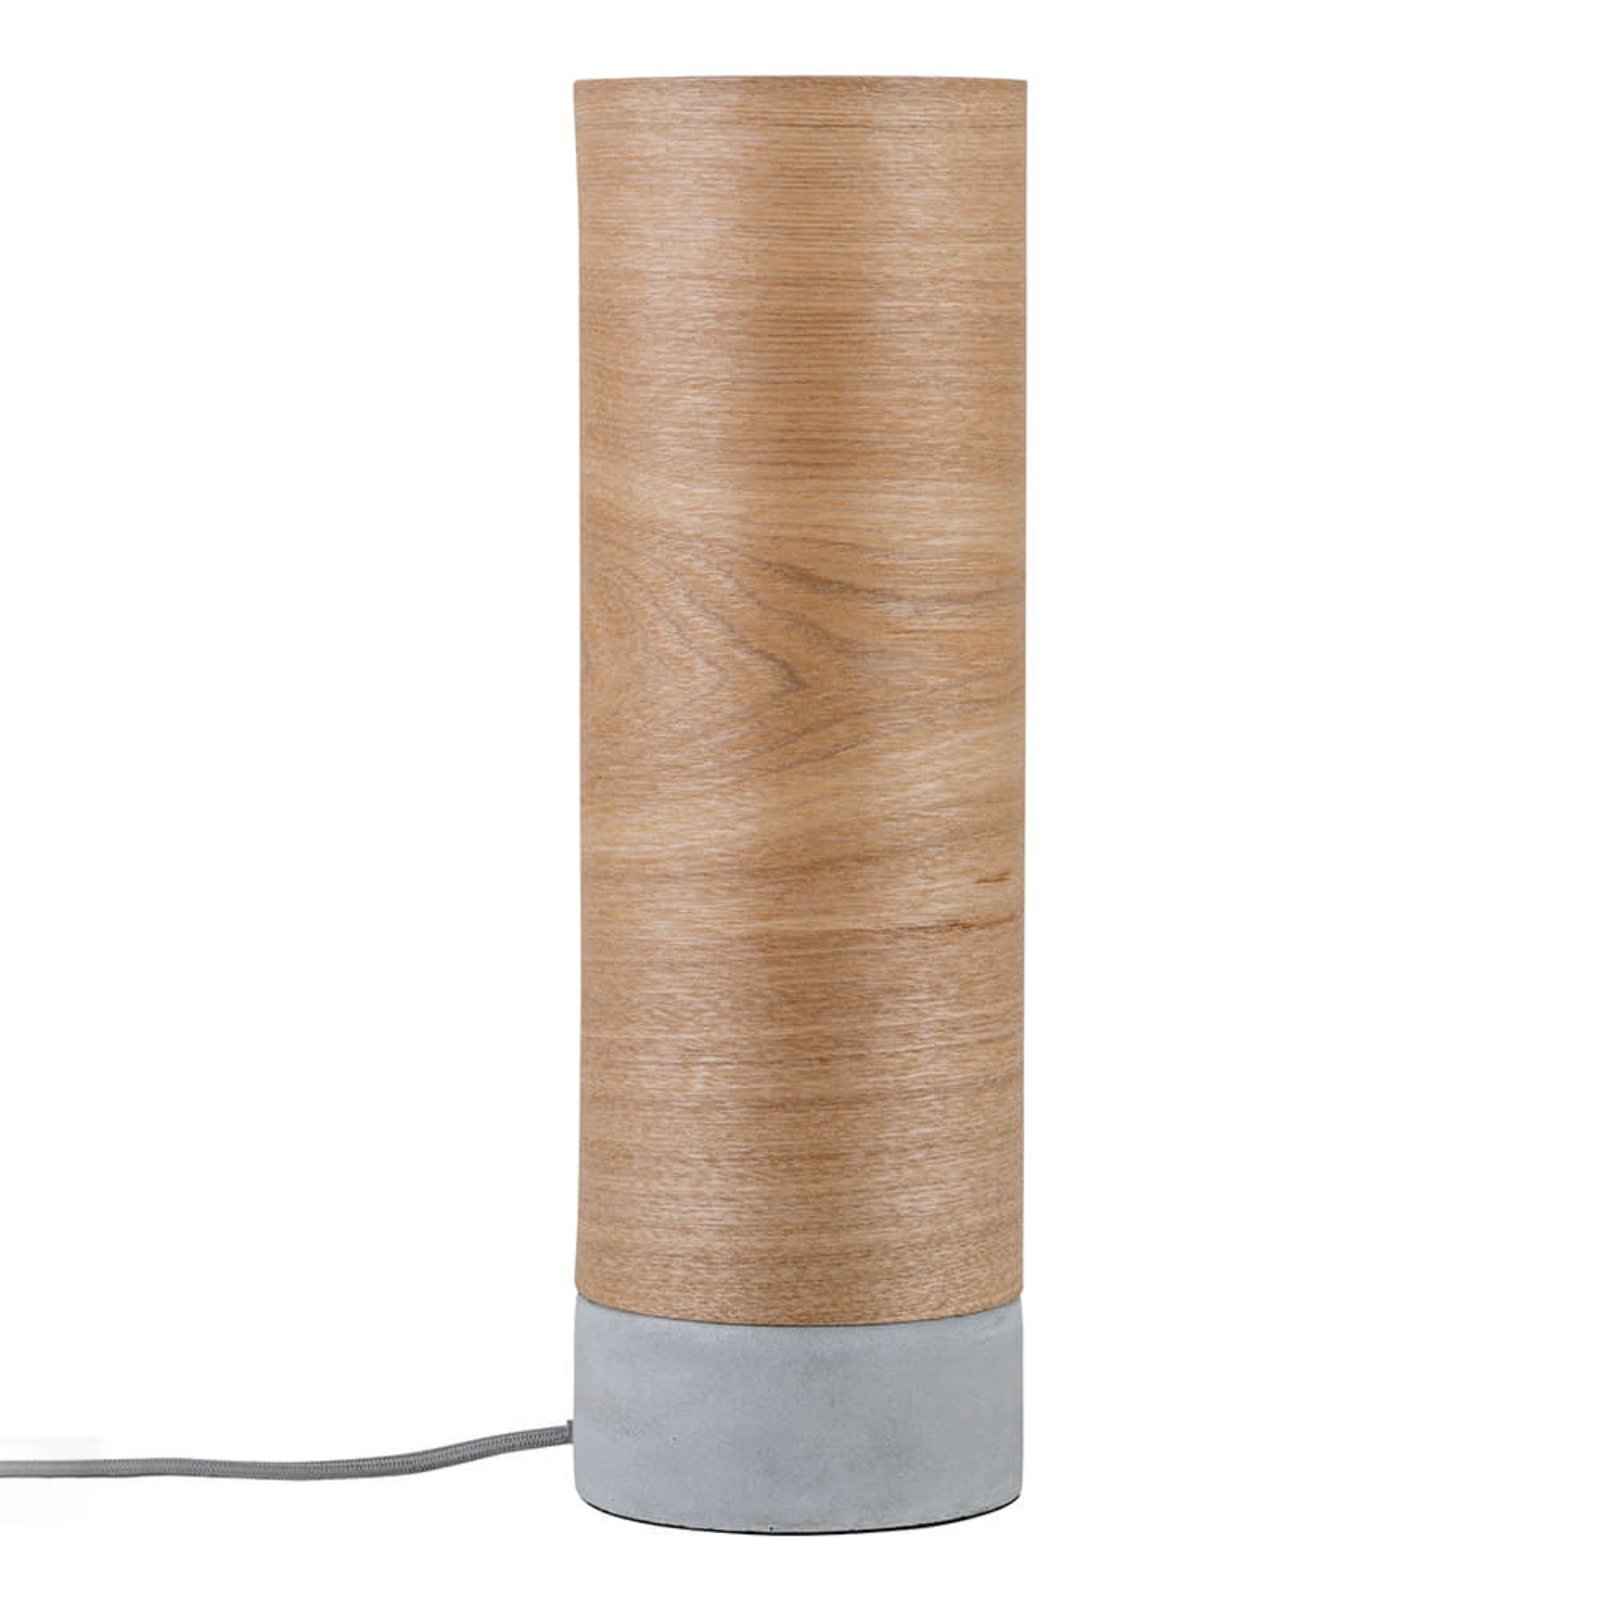 Cylindrical wood table lamp Skadi- concrete base